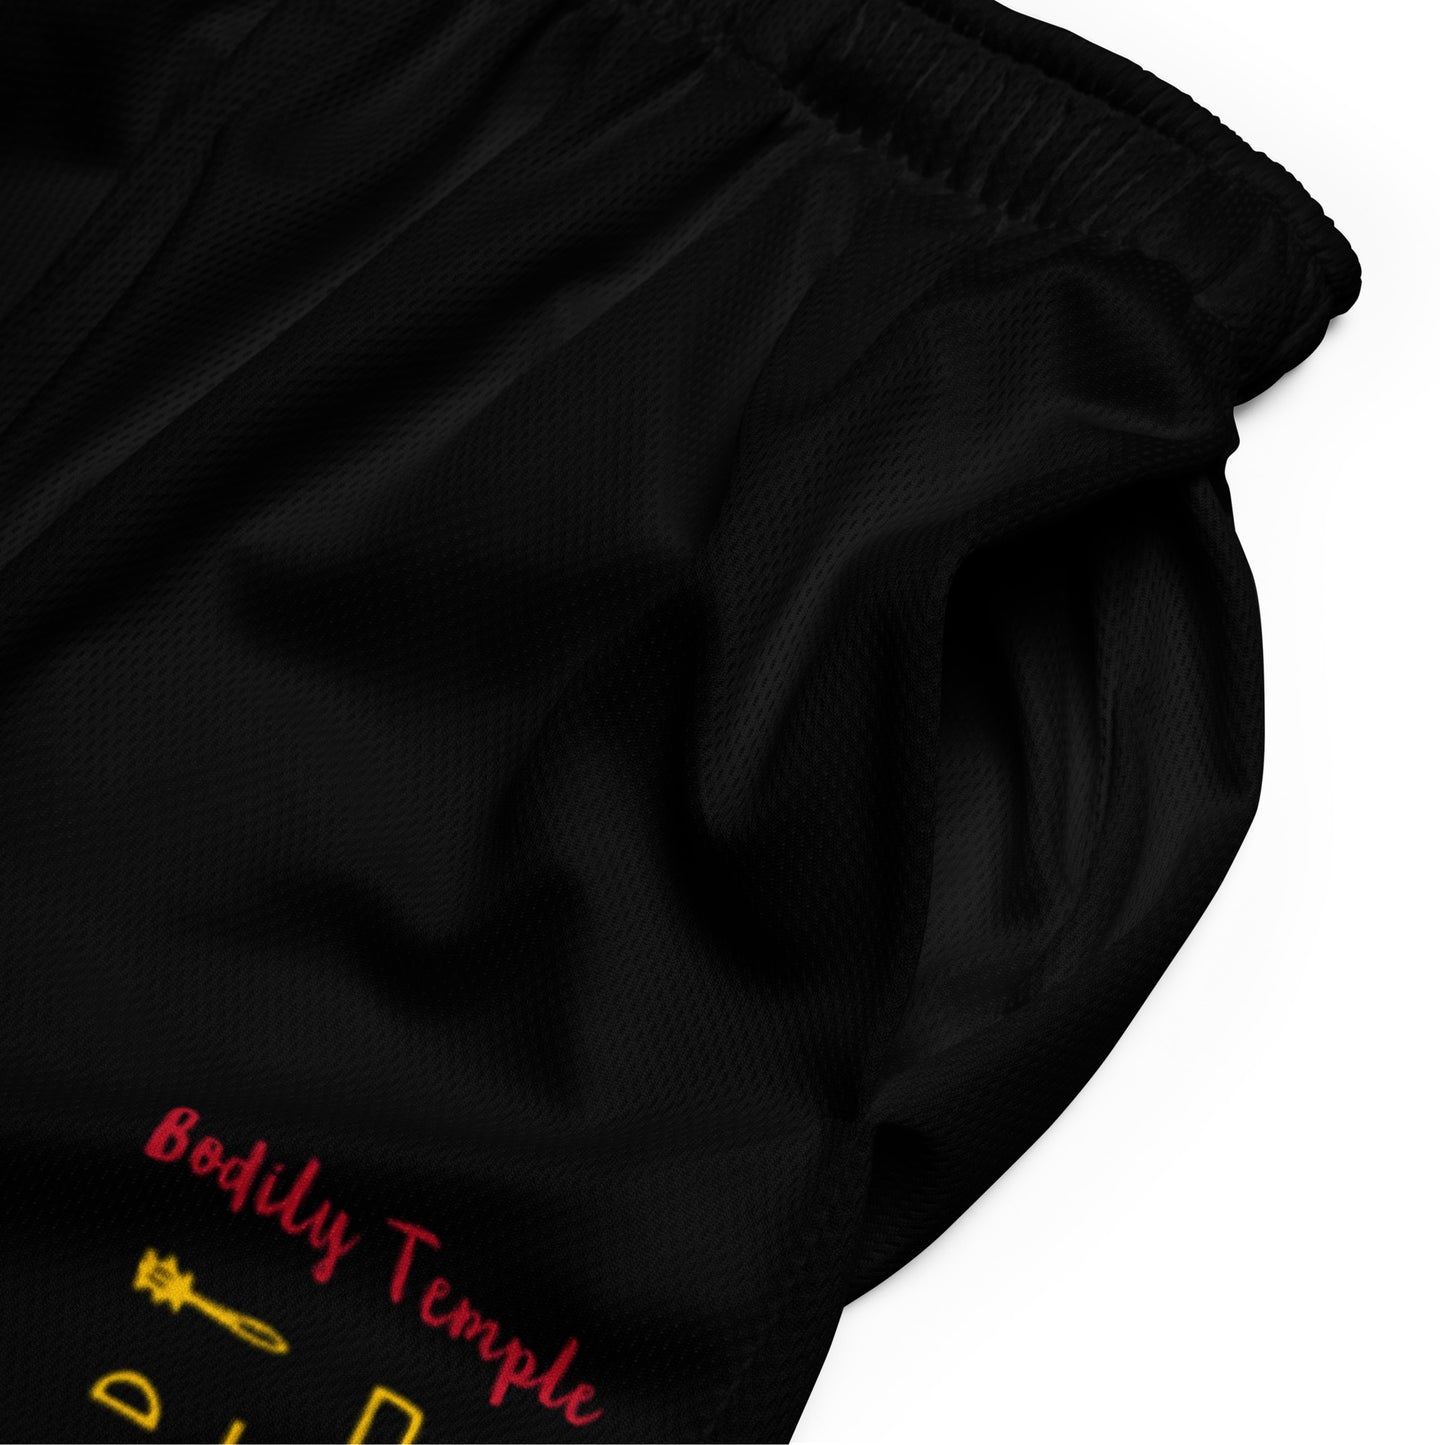 Bodily Temple Mesh Shorts (Black)